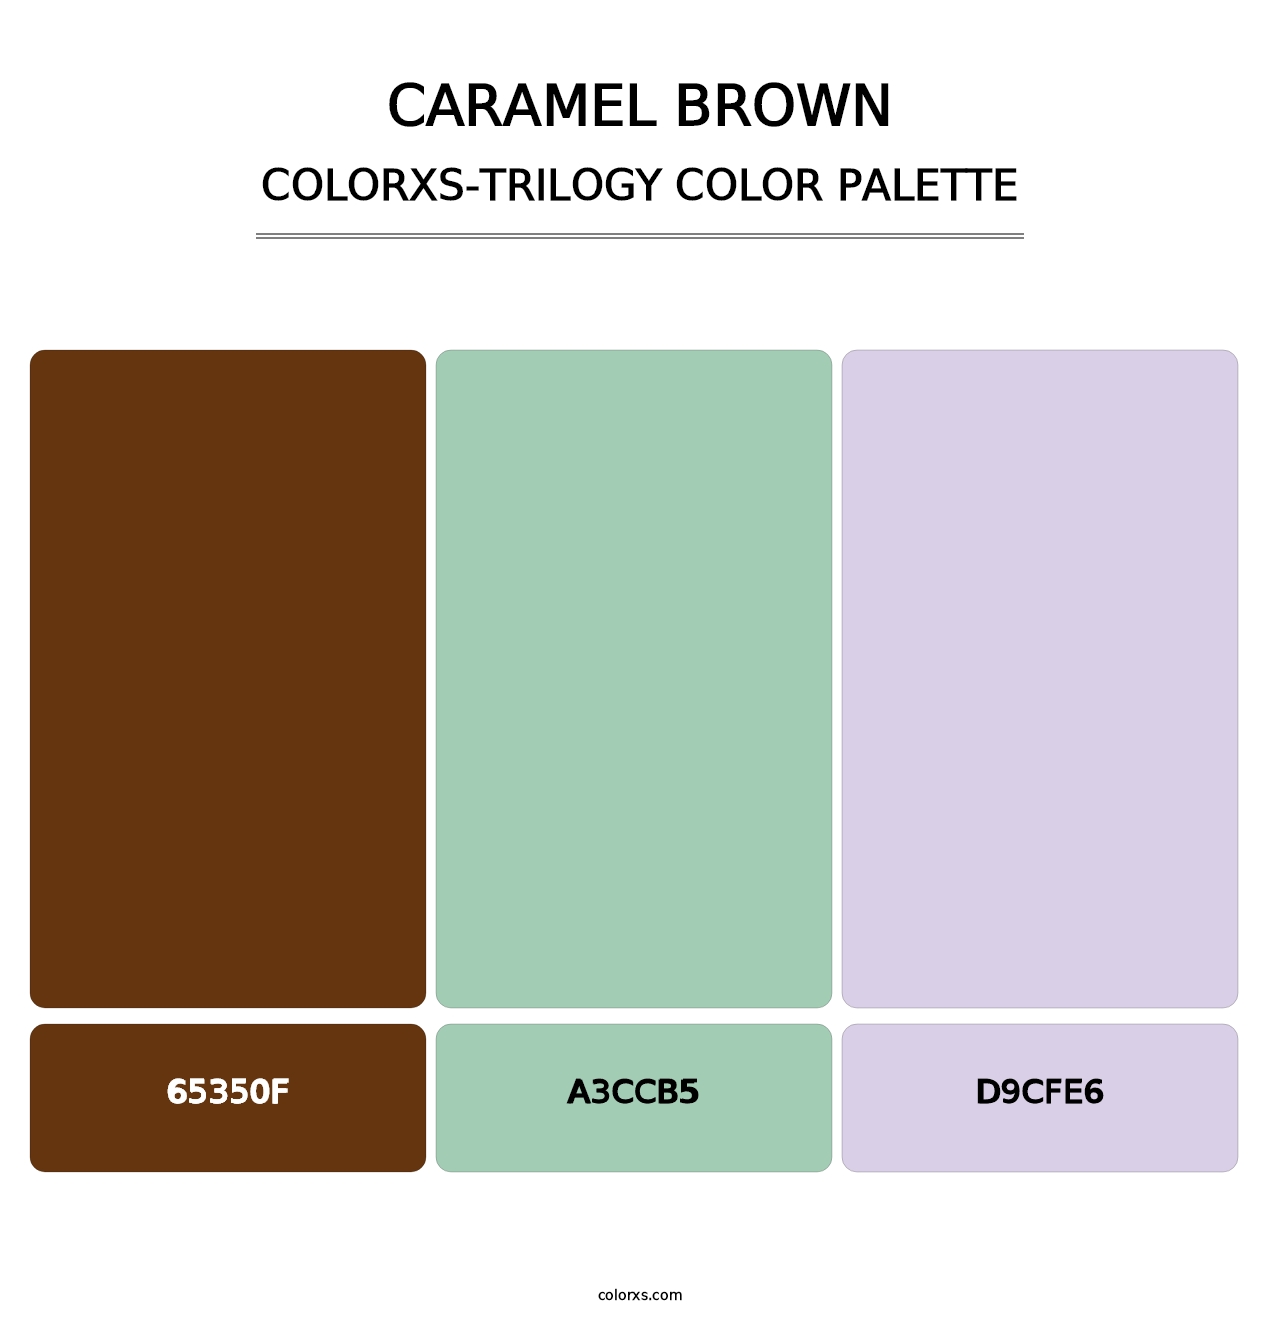 Caramel Brown - Colorxs Trilogy Palette